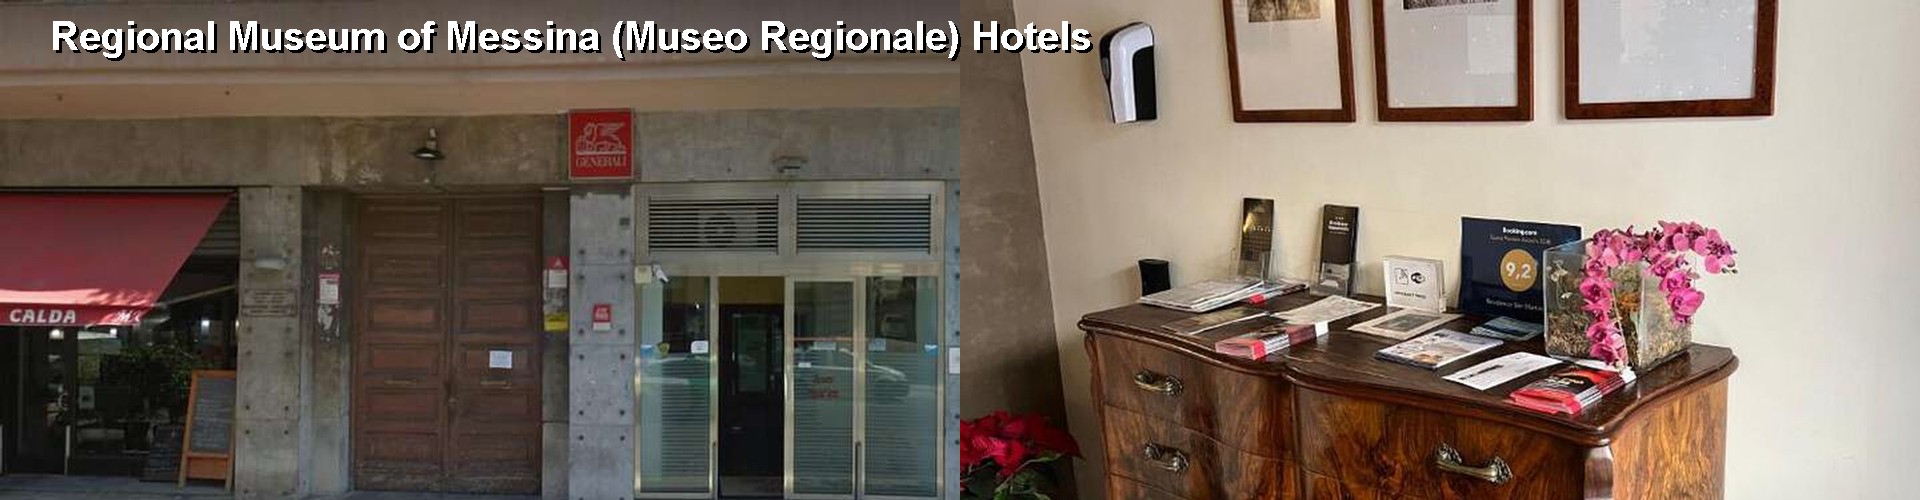 5 Best Hotels near Regional Museum of Messina (Museo Regionale)